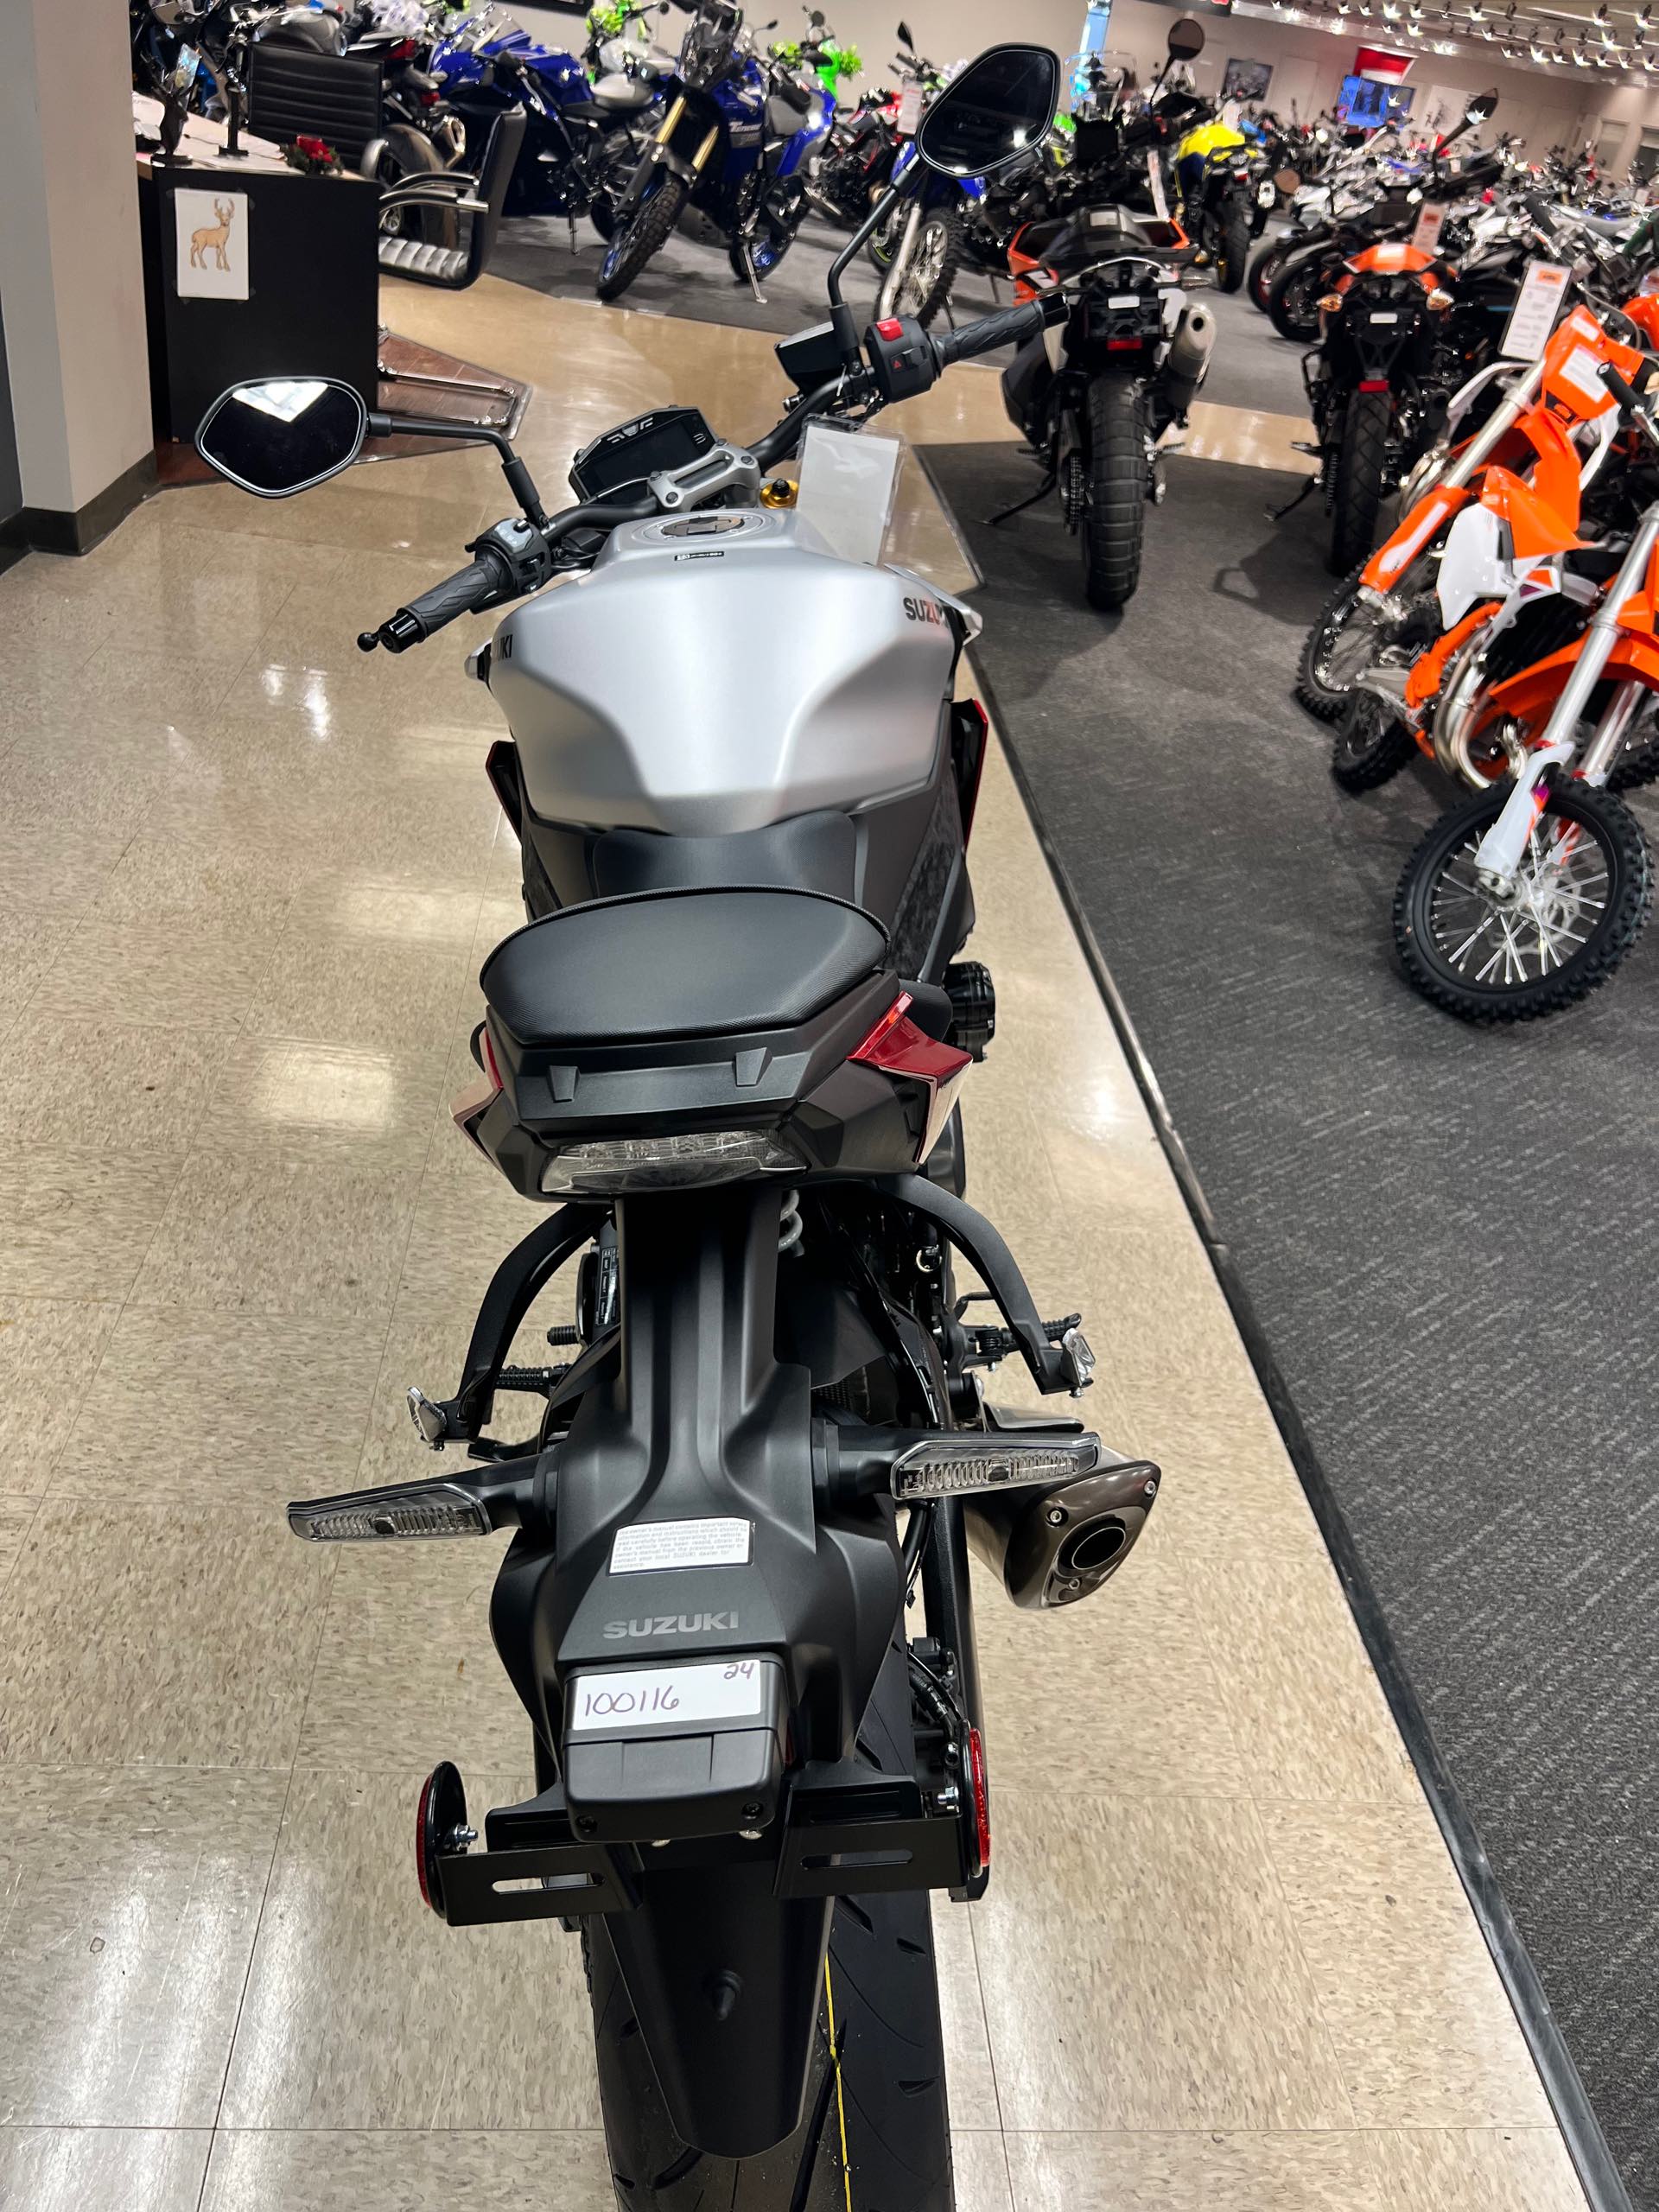 2024 Suzuki GSX-S 1000 at Sloans Motorcycle ATV, Murfreesboro, TN, 37129